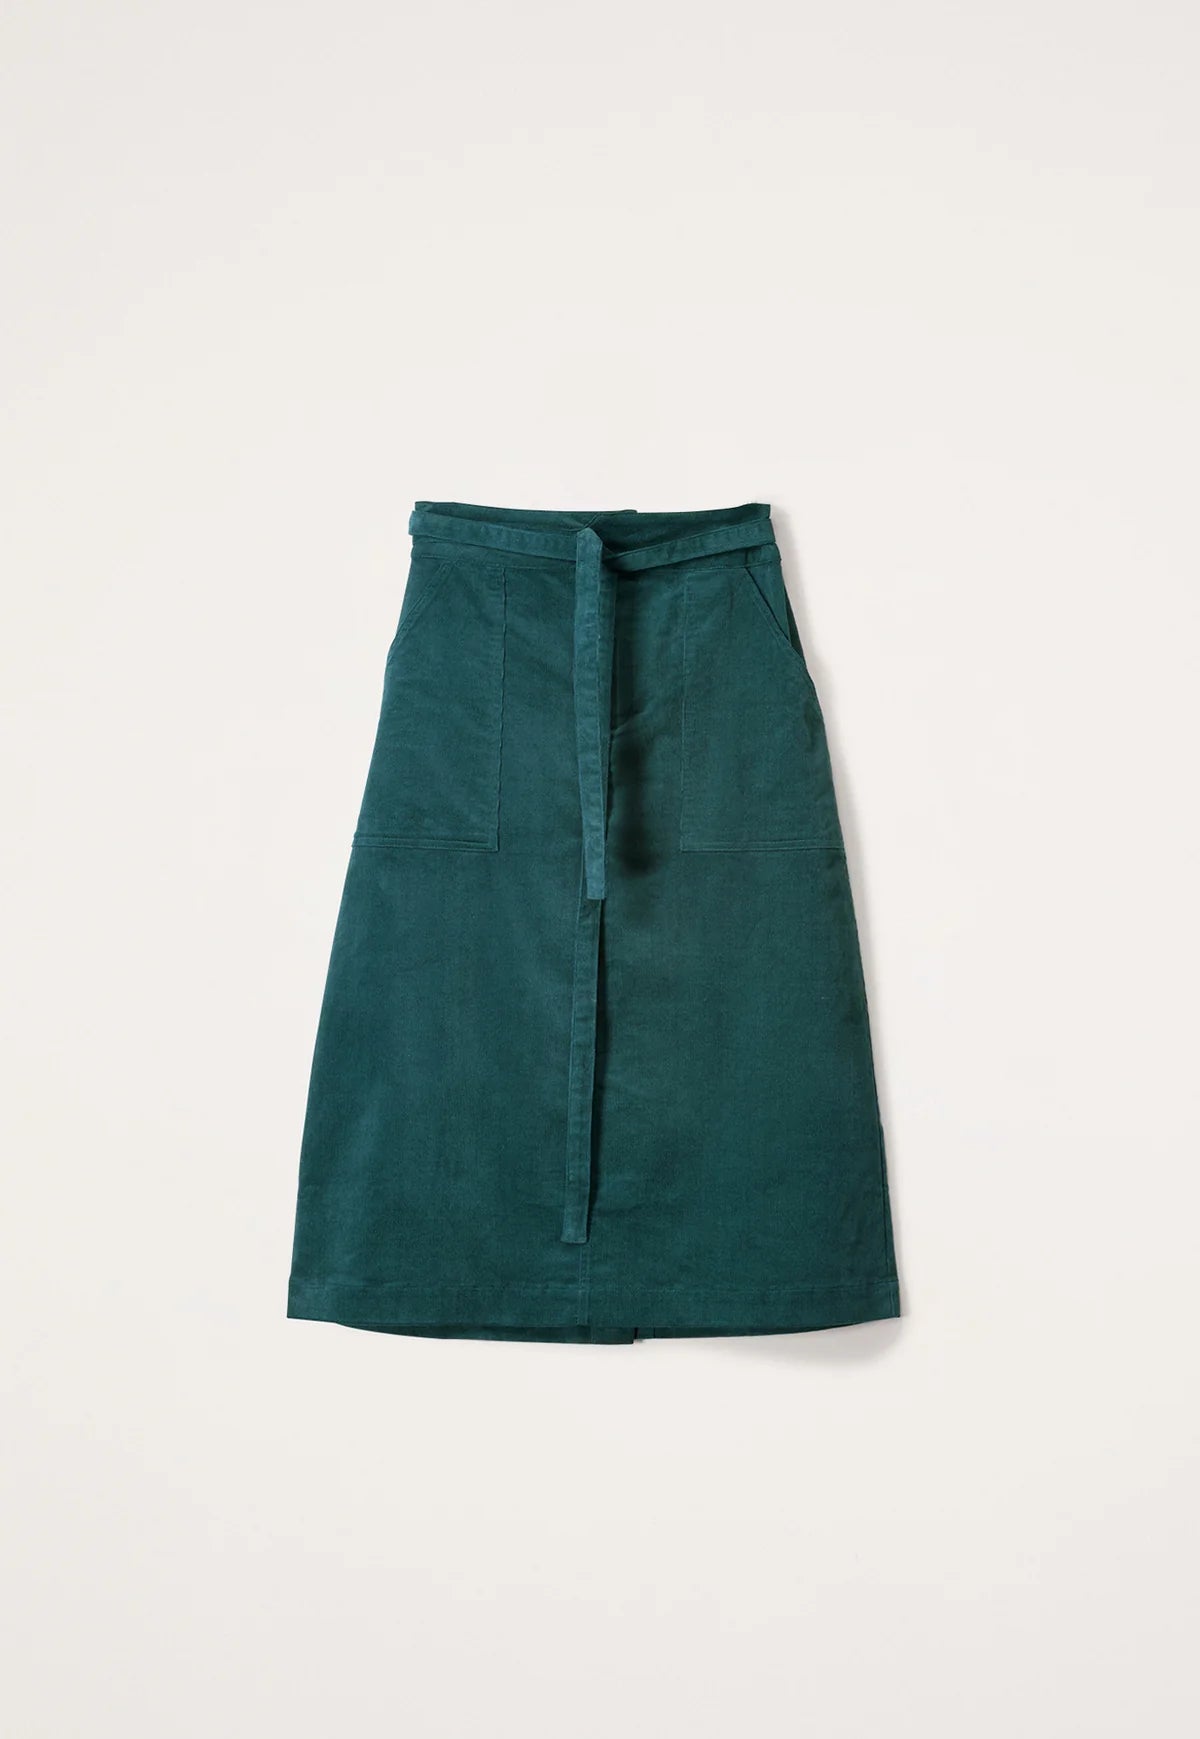 Nancybird Ume tie skirt A-line in fern green cotton corduroy.